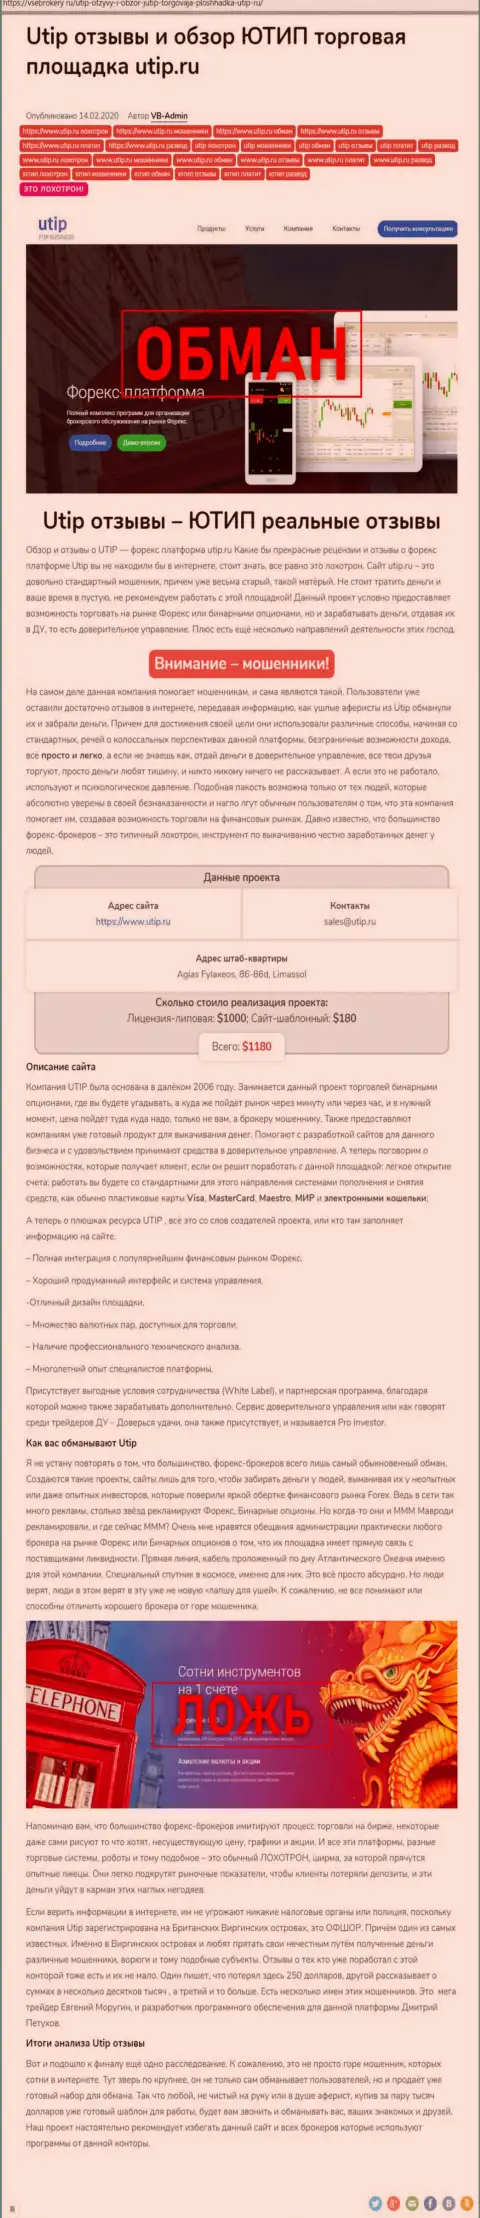 Обзор scam-компании UTIP Technologies Ltd - это МОШЕННИКИ !!!